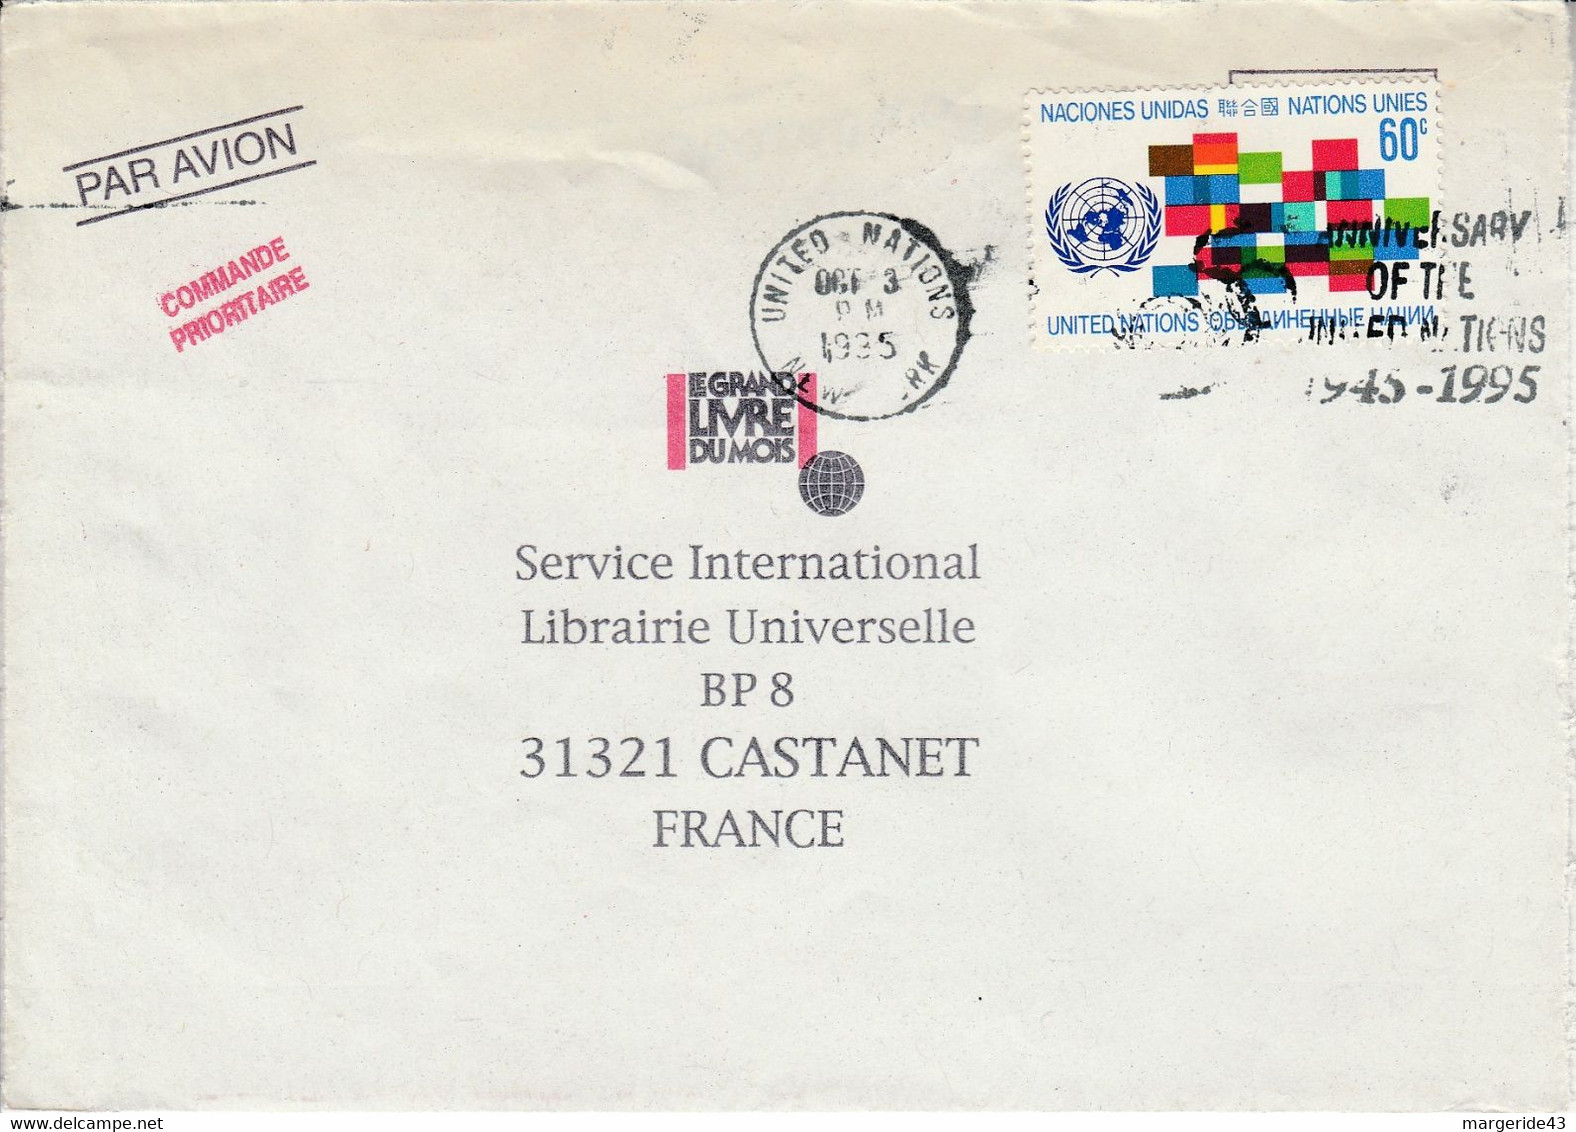 NATIONS UNIES SEUL SUR LETTRE POUR LA FRANCE 1995 - Briefe U. Dokumente